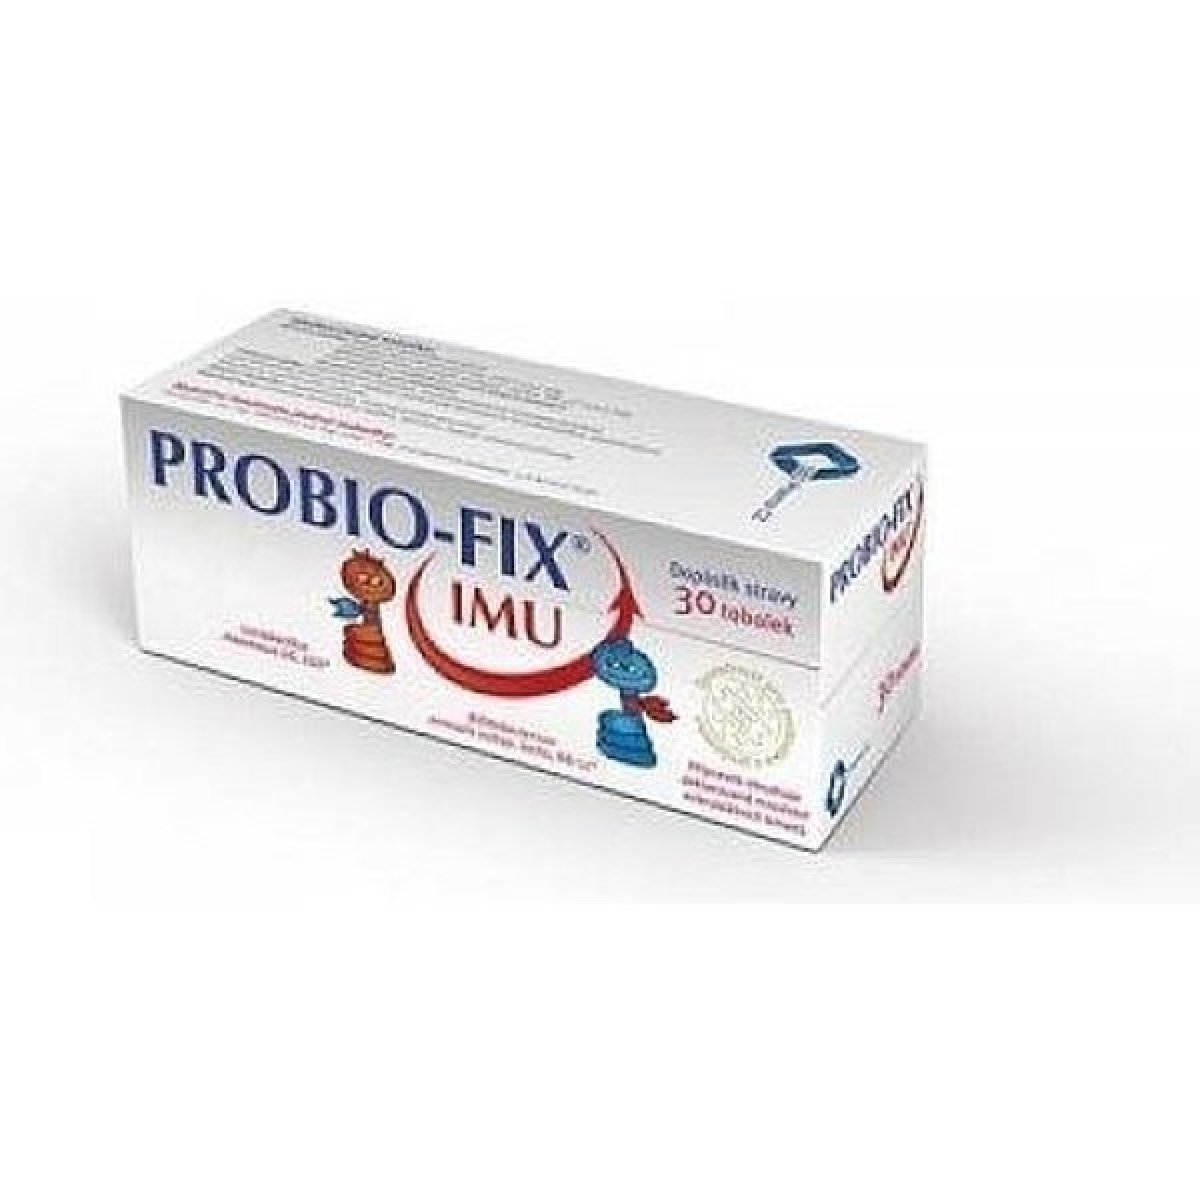 ProBio Fix Imu 30 tablet od 169 Kč - Heureka.cz